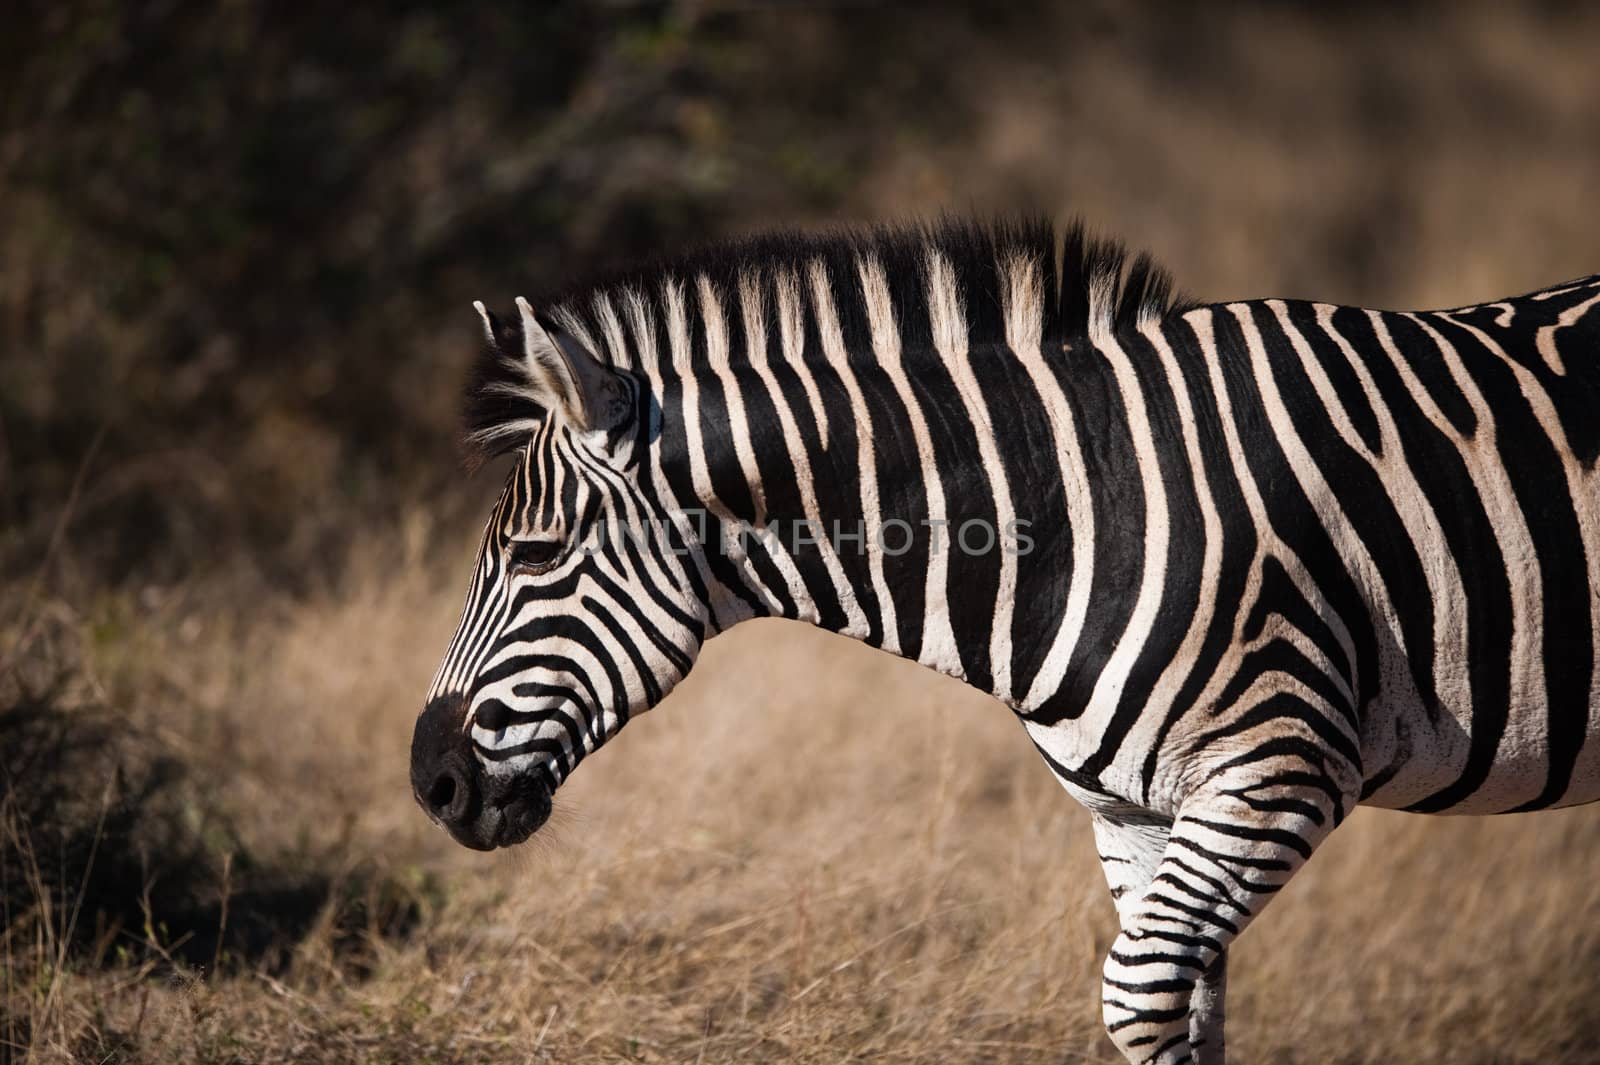 PLAINS ZEBRA (Equus quagga) profile view, South Africa